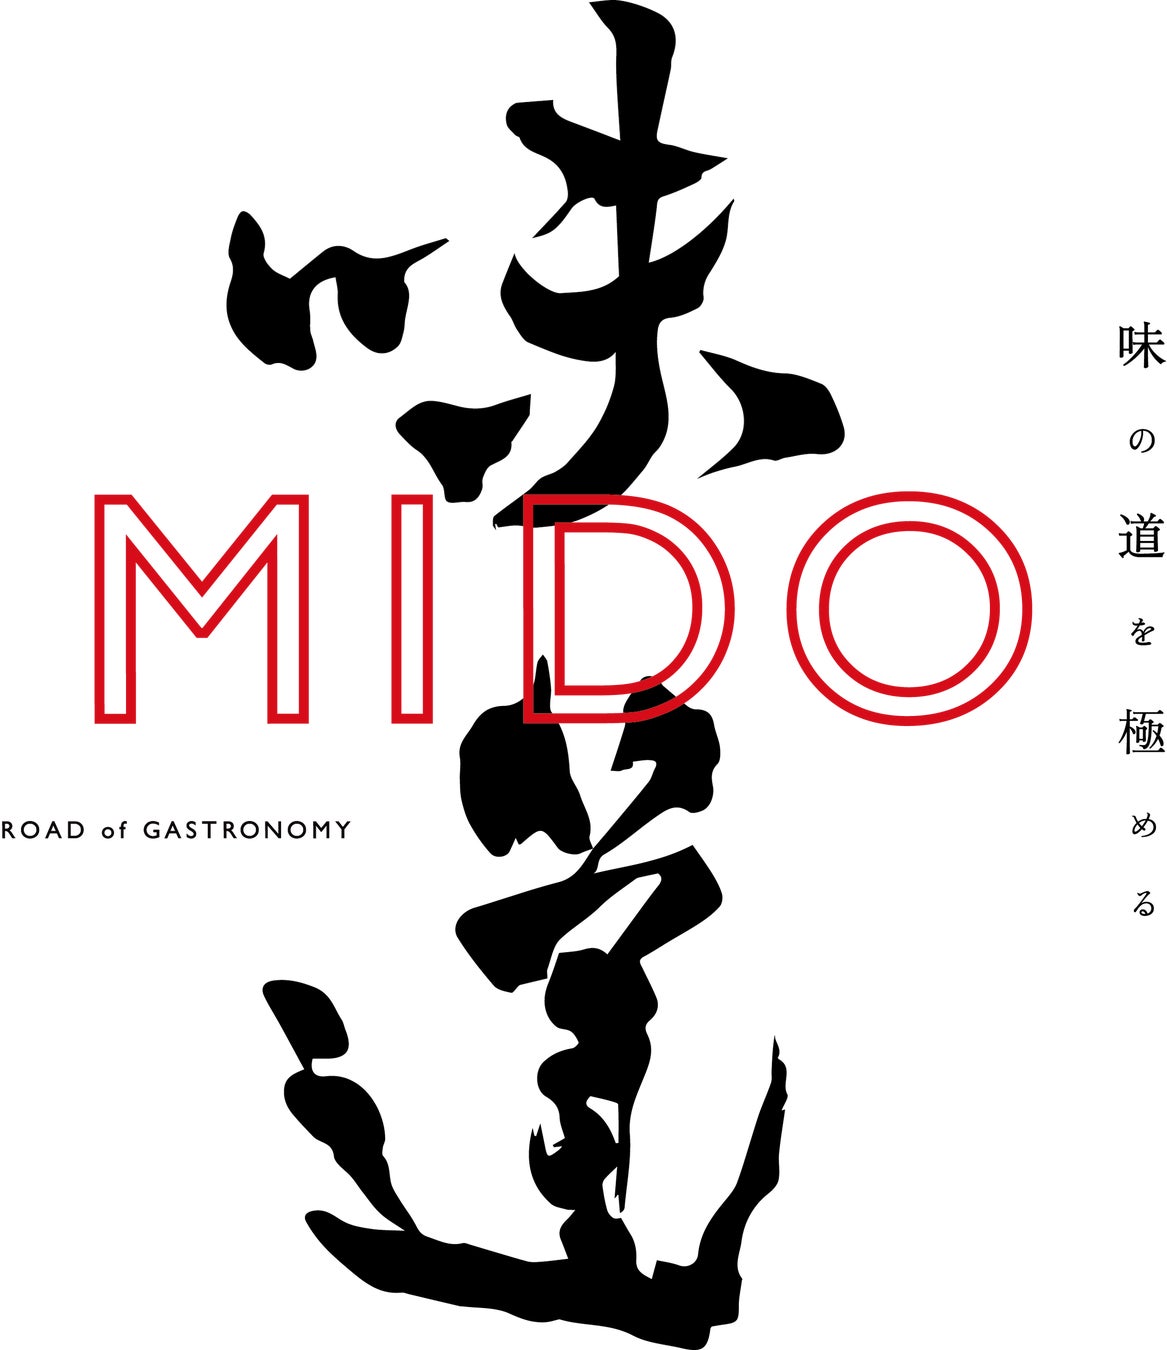 『味道／MIDO』、日本が世界に誇る食文化の継承・発展を目的とした文化プロジェクト始動。第一弾として、7/6(木)に動画配信サービスをローンチ